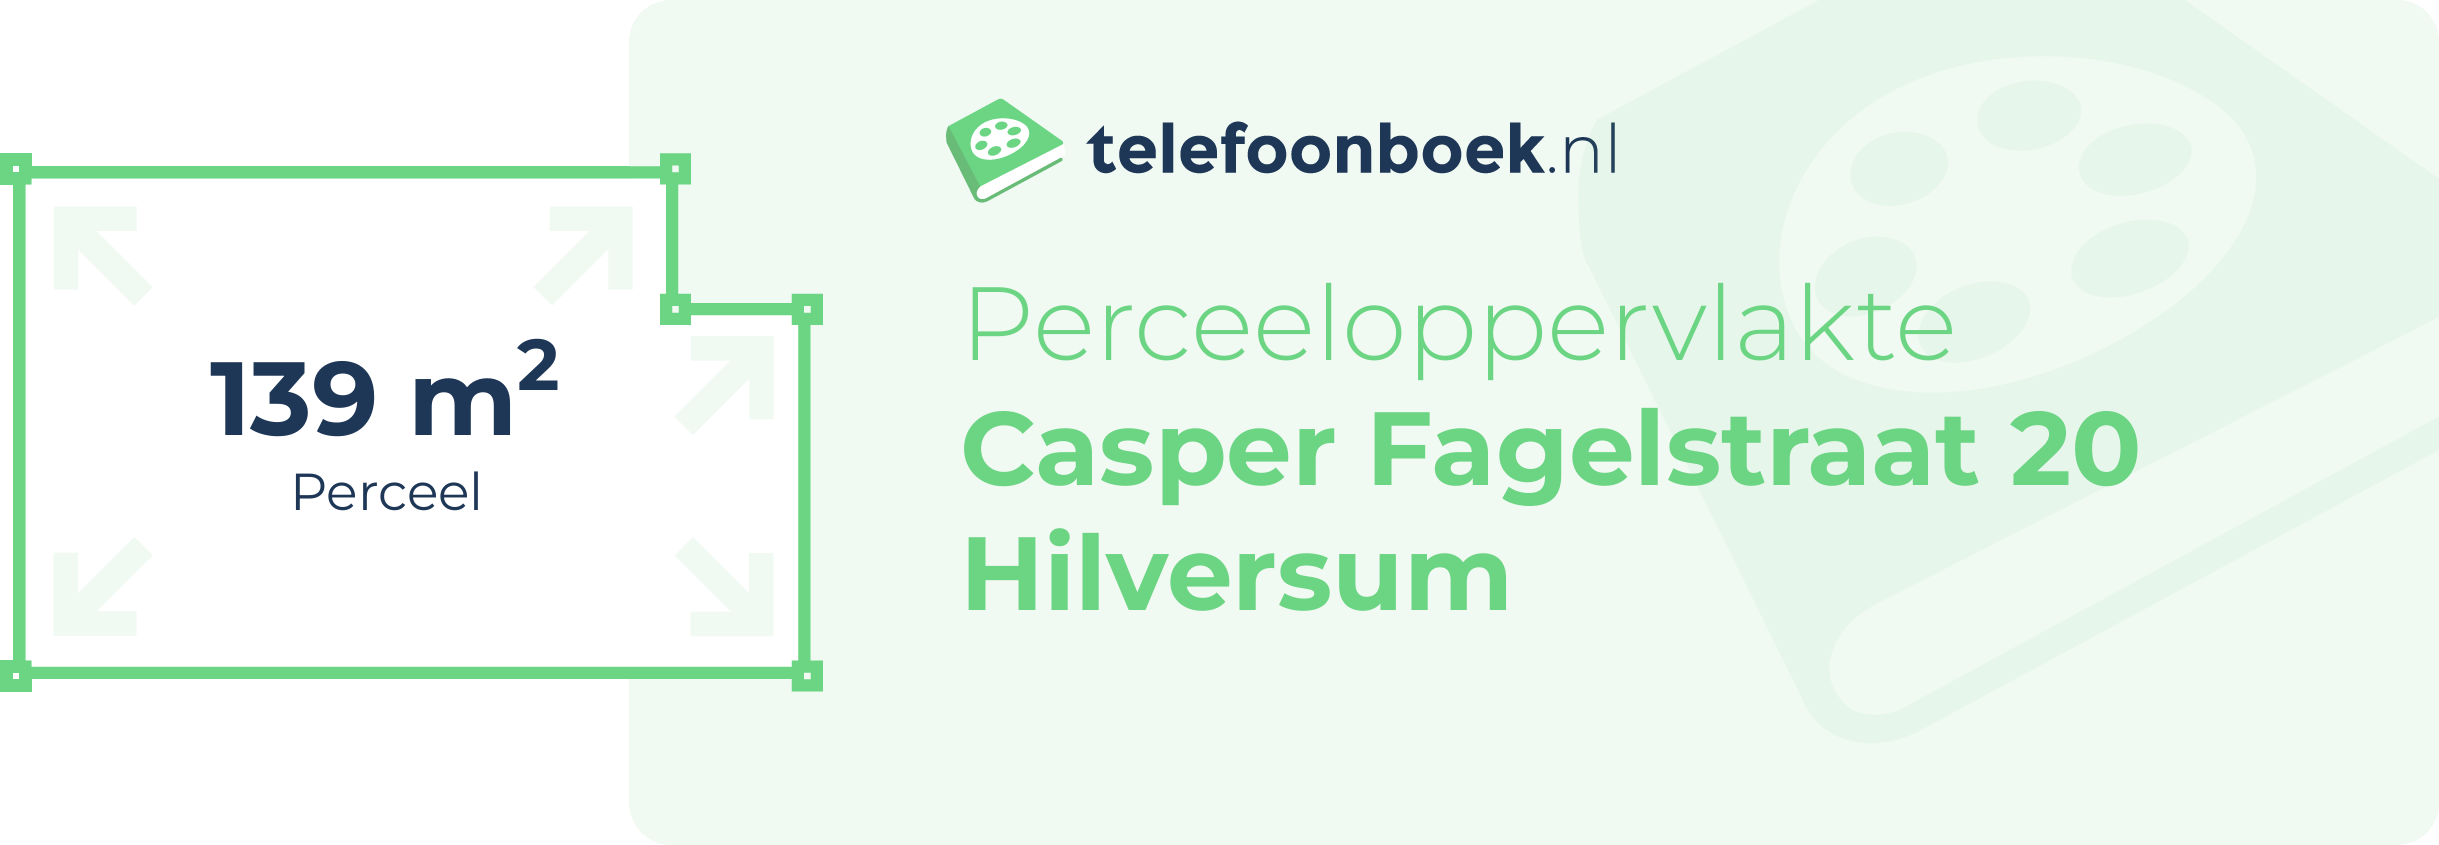 Perceeloppervlakte Casper Fagelstraat 20 Hilversum